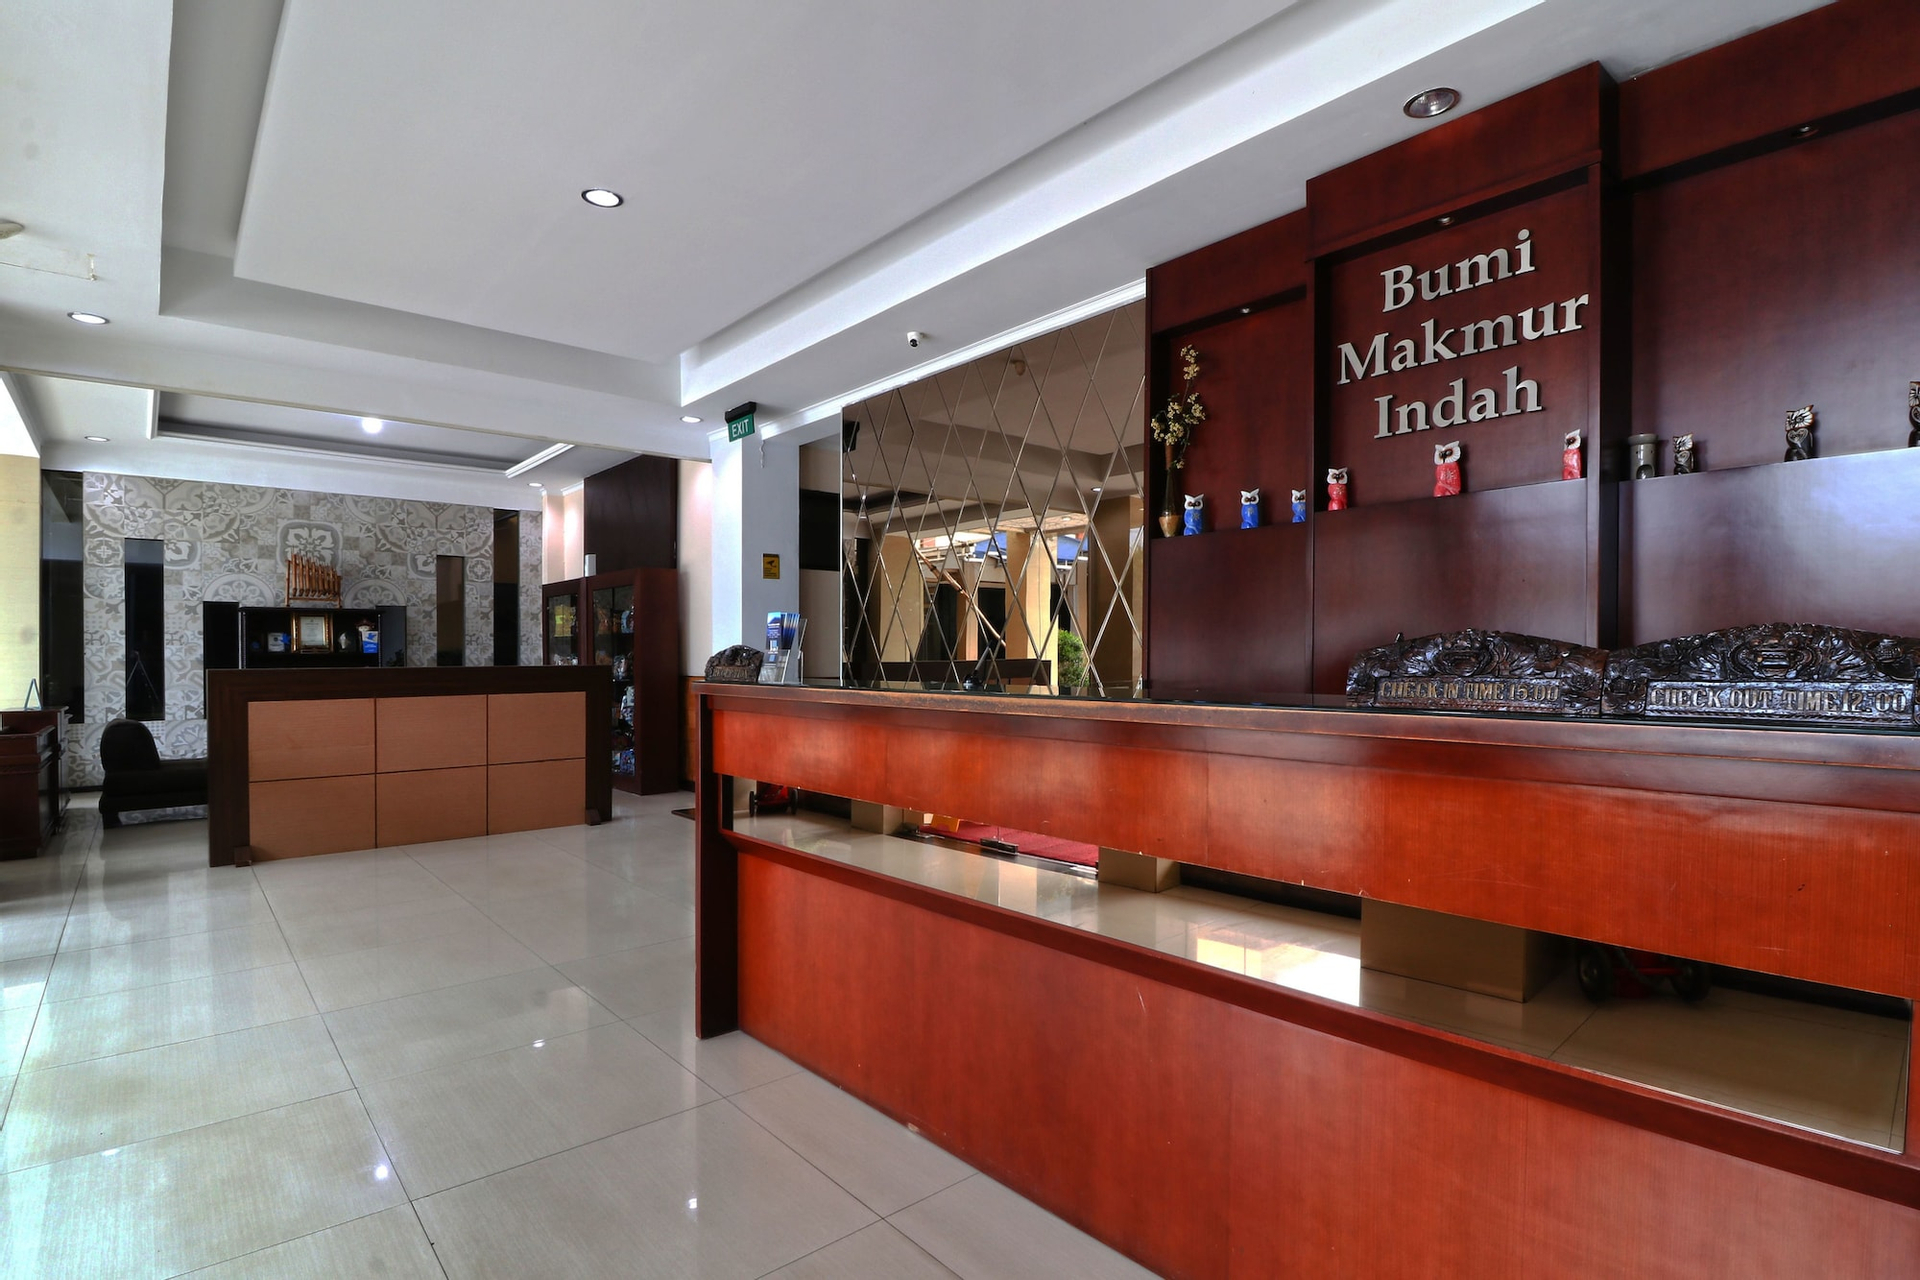 Public Area 2, Hotel Bumi Makmur Indah, Bandung